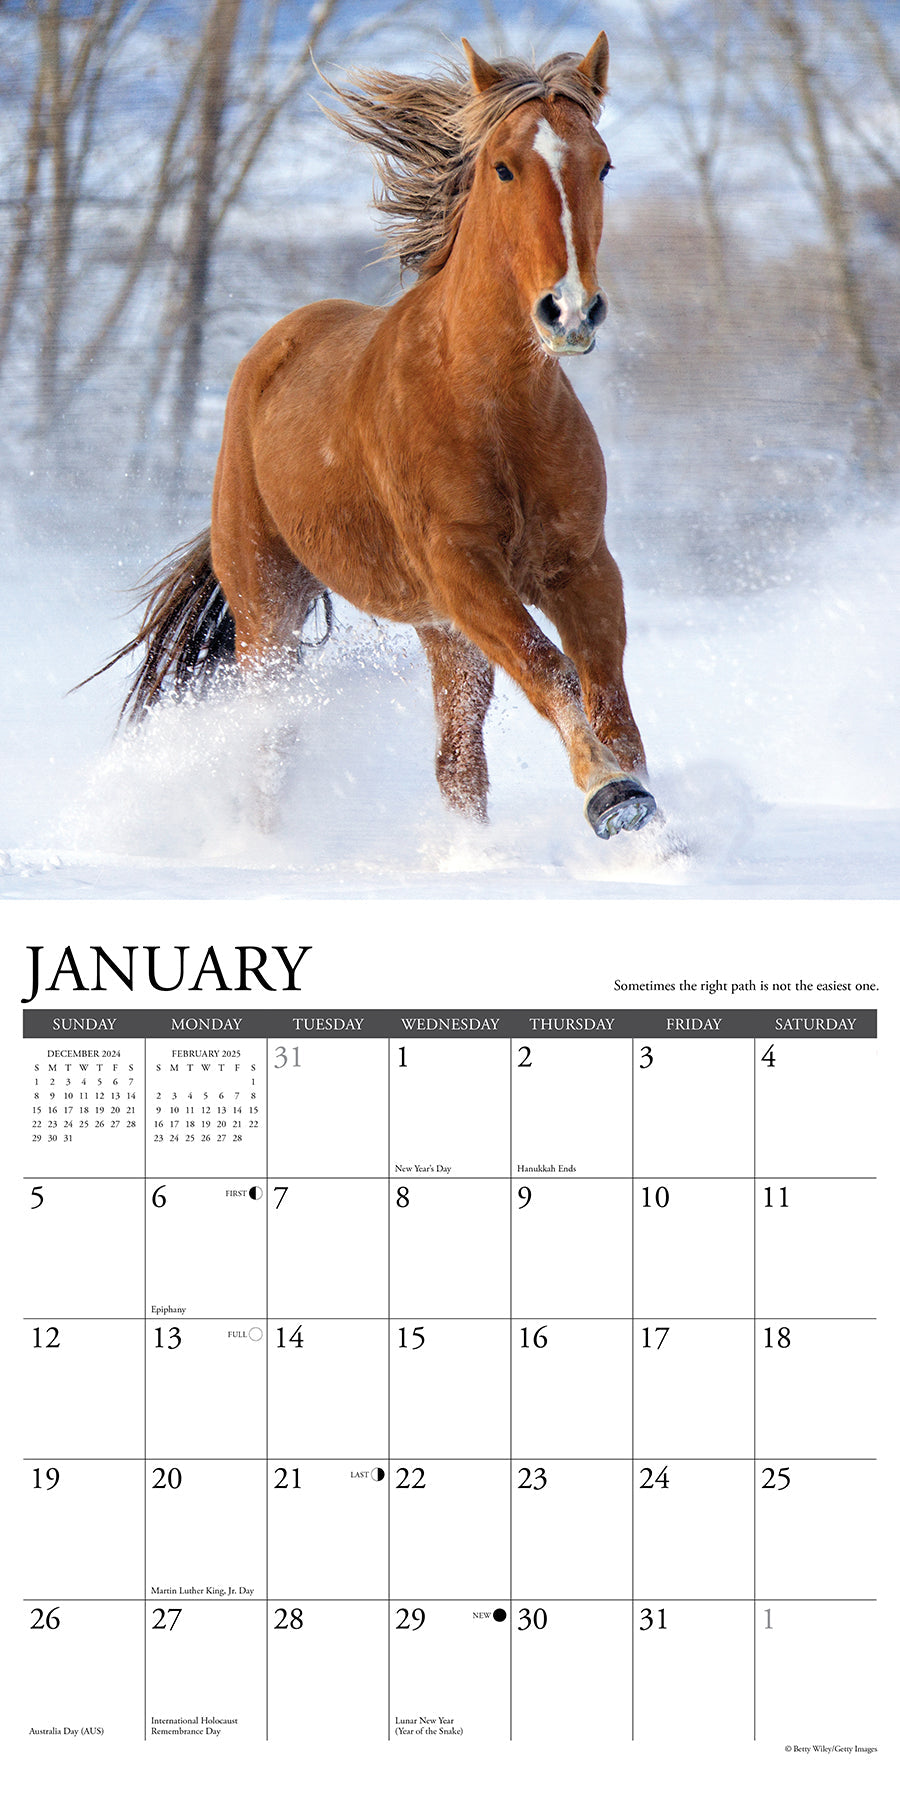 2025 What Horses Teach Us - Square Wall Calendar